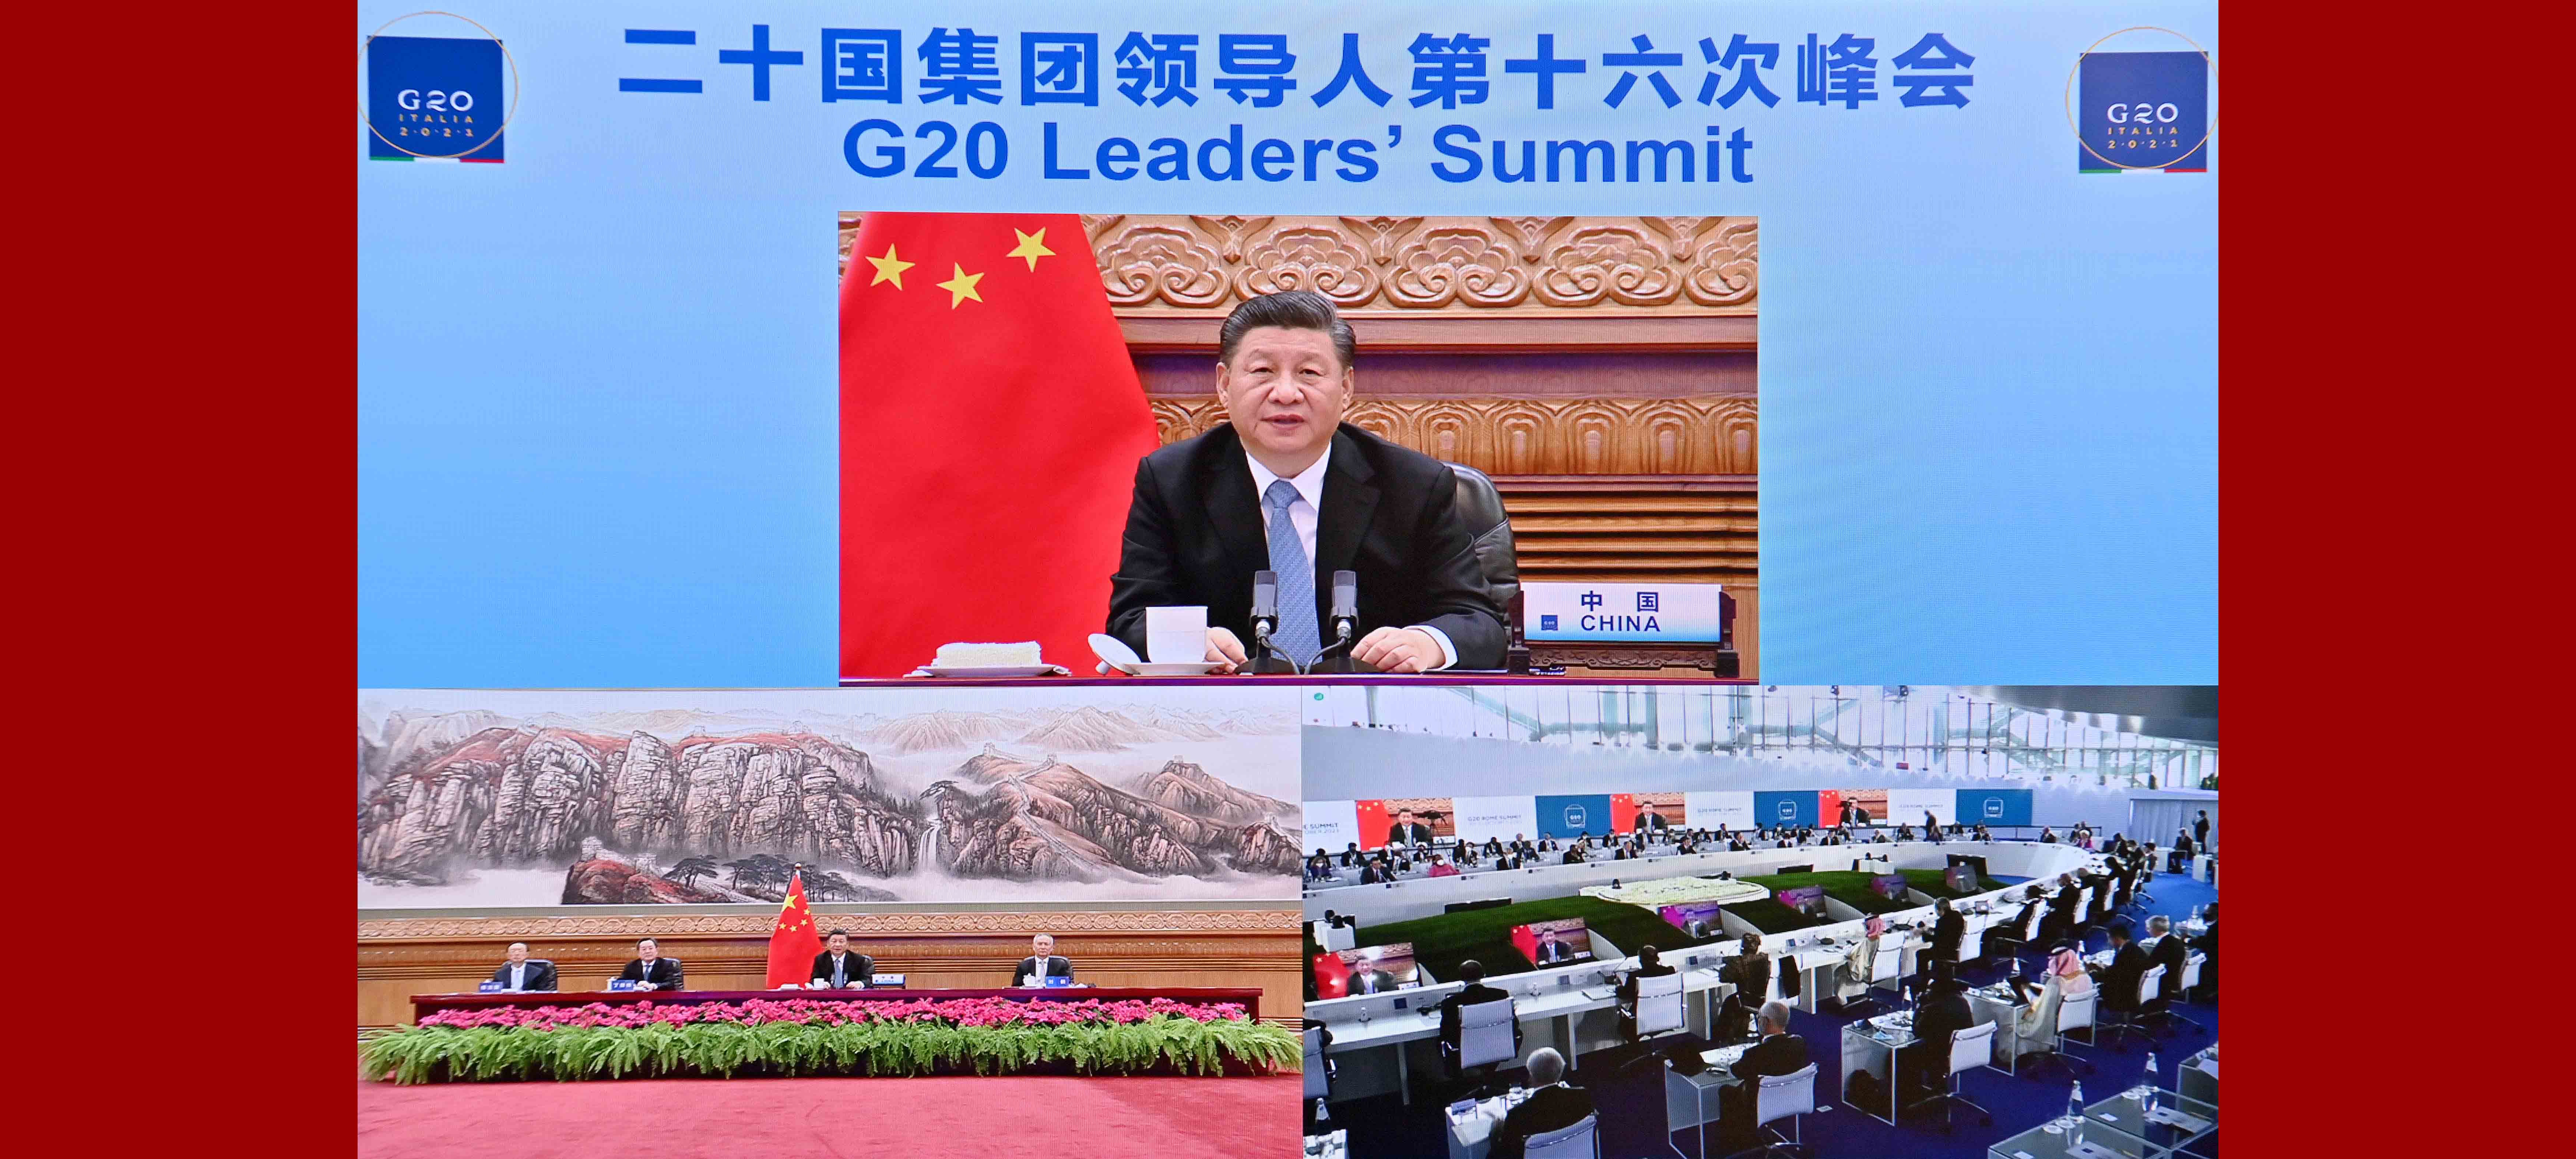 Xi pede ações concretas para abordar mudanças climáticas e problemas energéticos